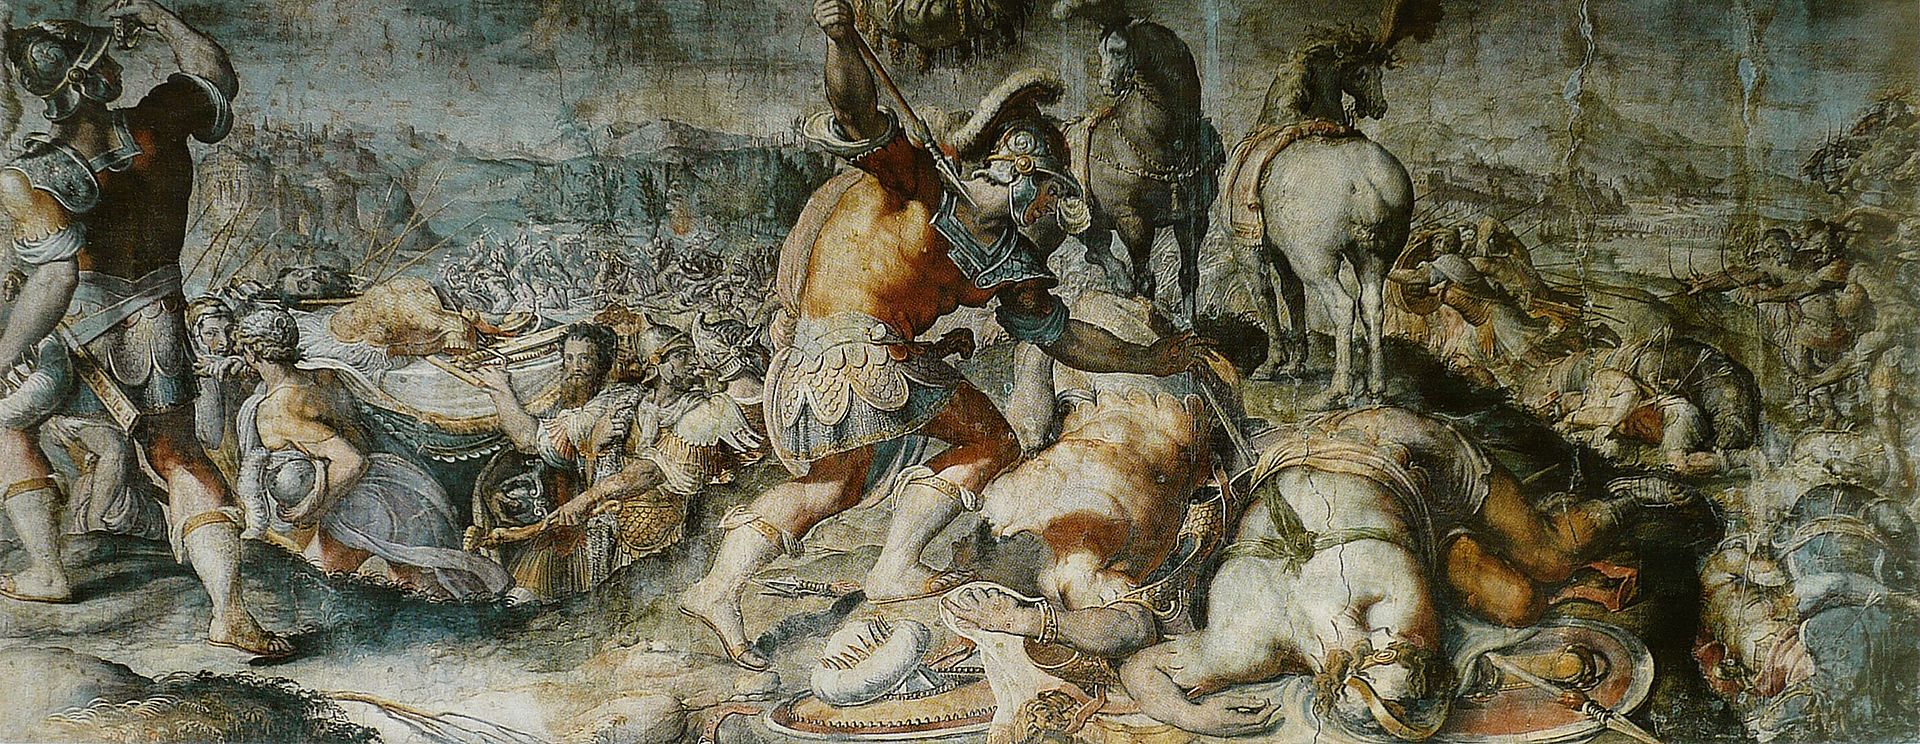 Смерть Саула, Франческо Салвиати, 1510 - 1563.